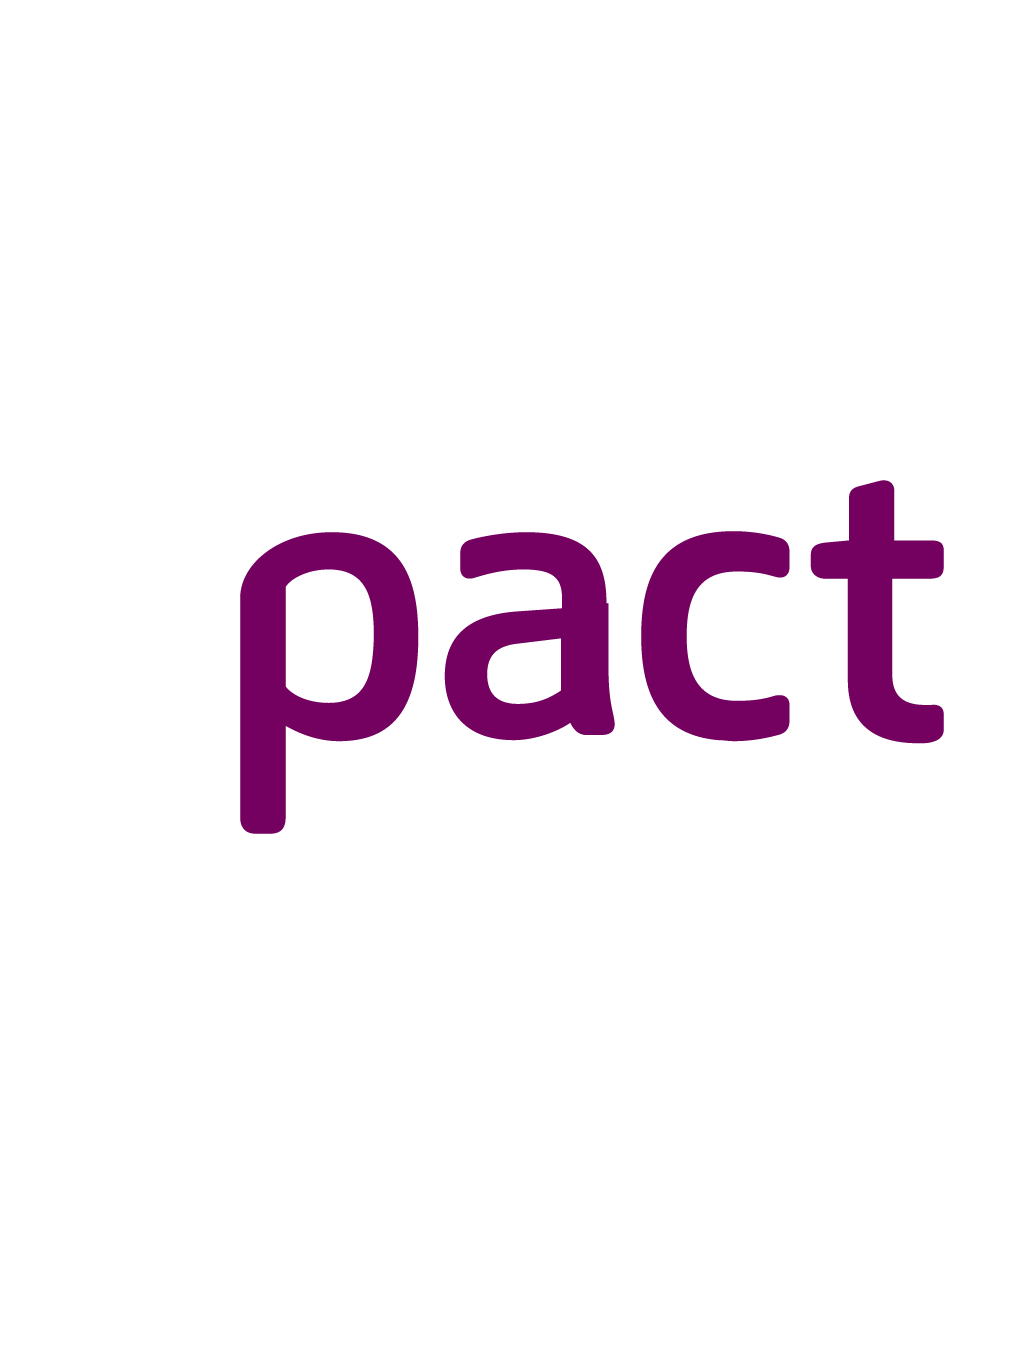 Pact - a global NGO